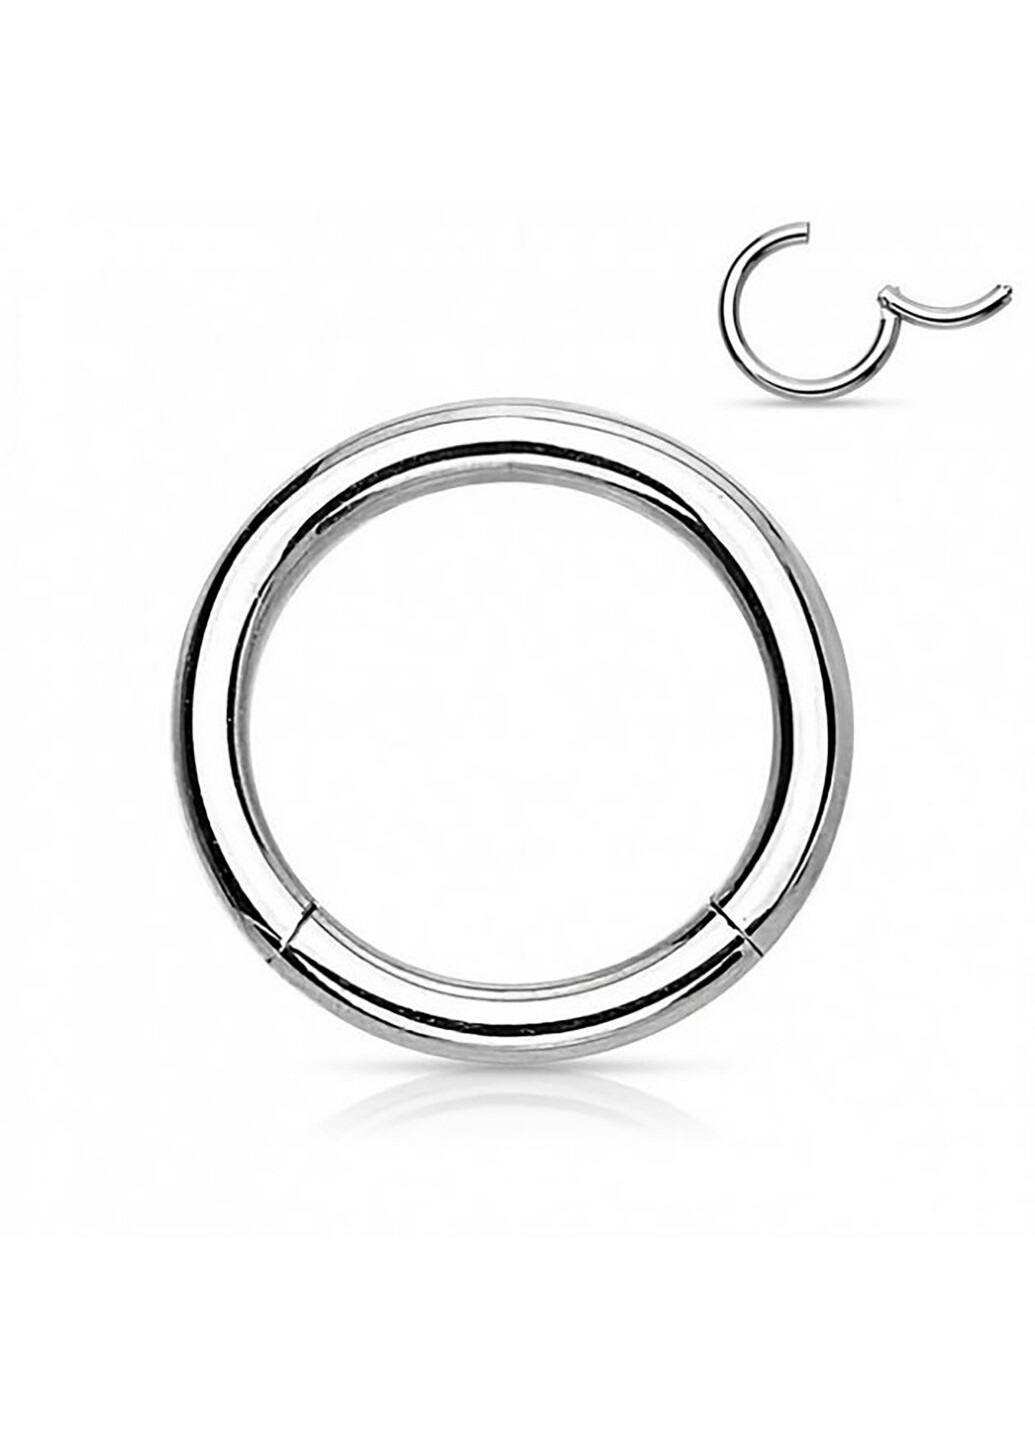 Универсальное кольцо - кликер из стали бренда PiercedFish диаметром 6 мм, толщиной 1 мм Spikes (257898134)